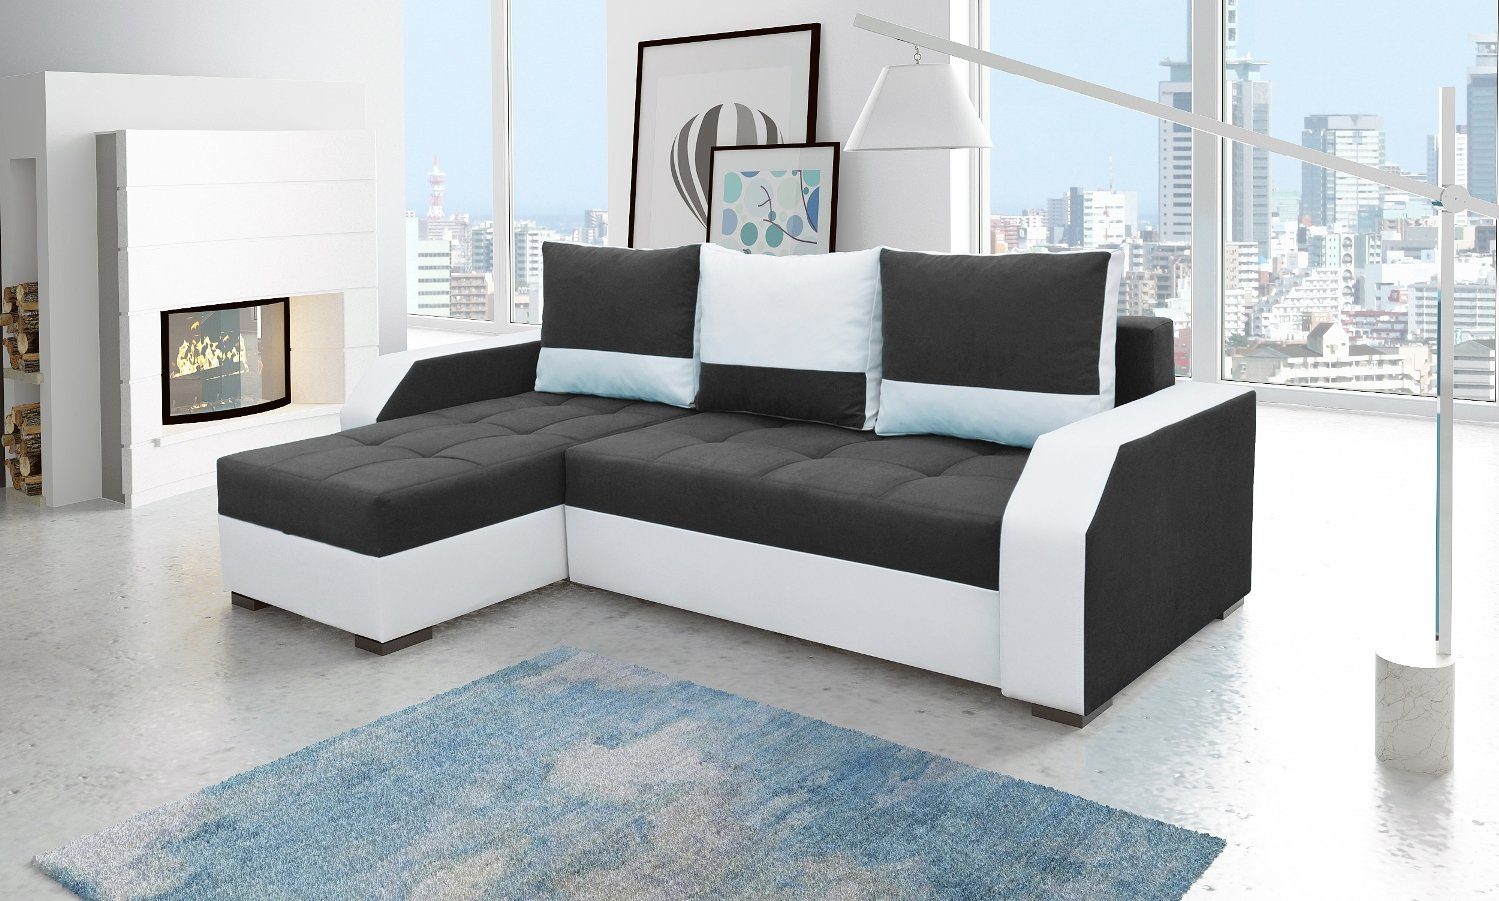 JVmoebel Ecksofa, Design Ecksofa Bettfunktion Couch Leder Textil Polster Sofas Couchen Schwarz / Weiß